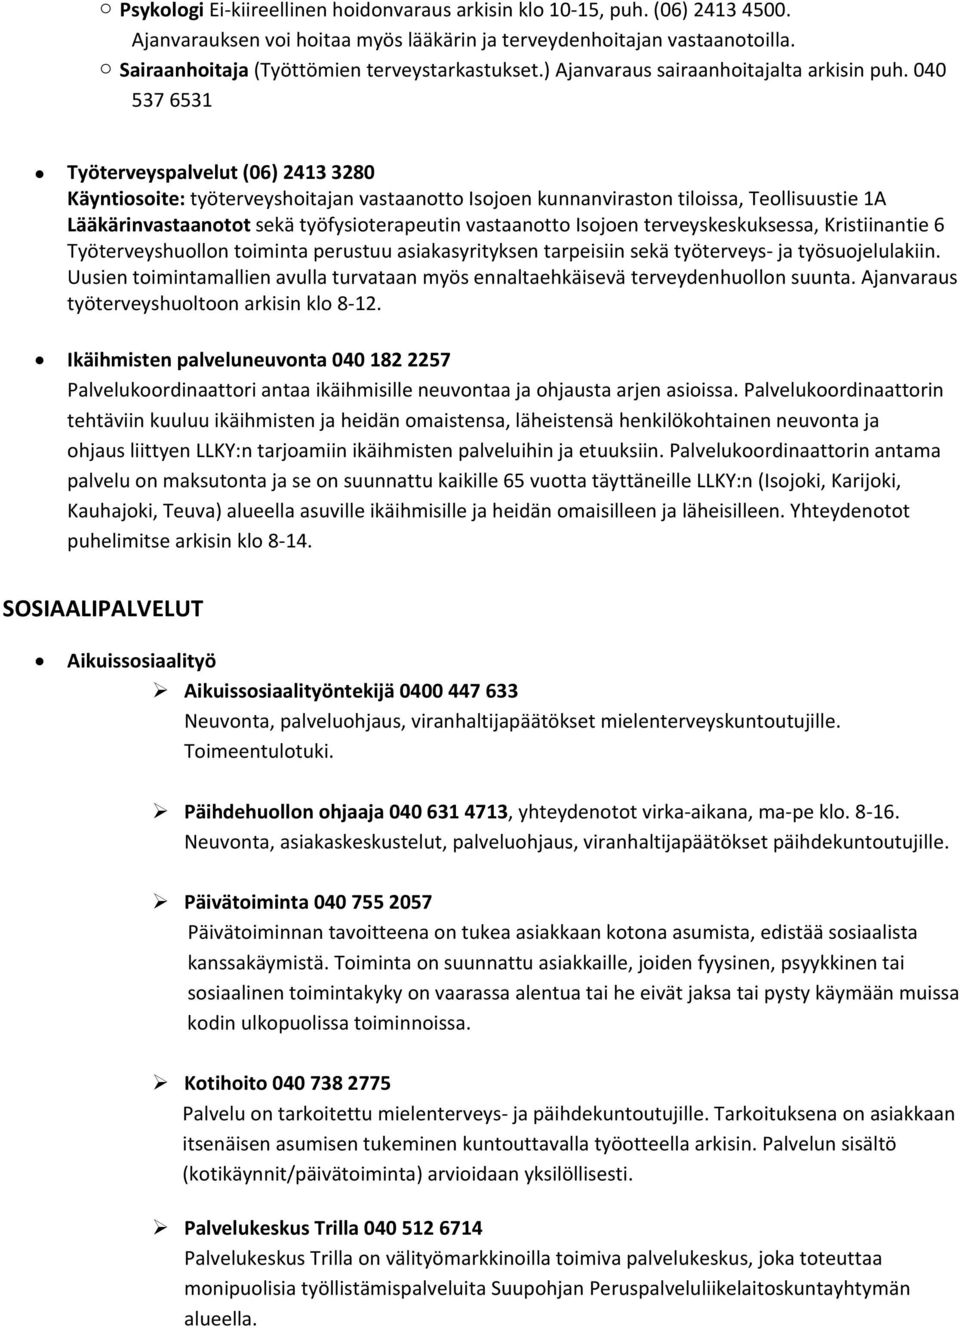 MIELENTERVEYS JA PÄIHDEPALVELUT - PDF Ilmainen lataus